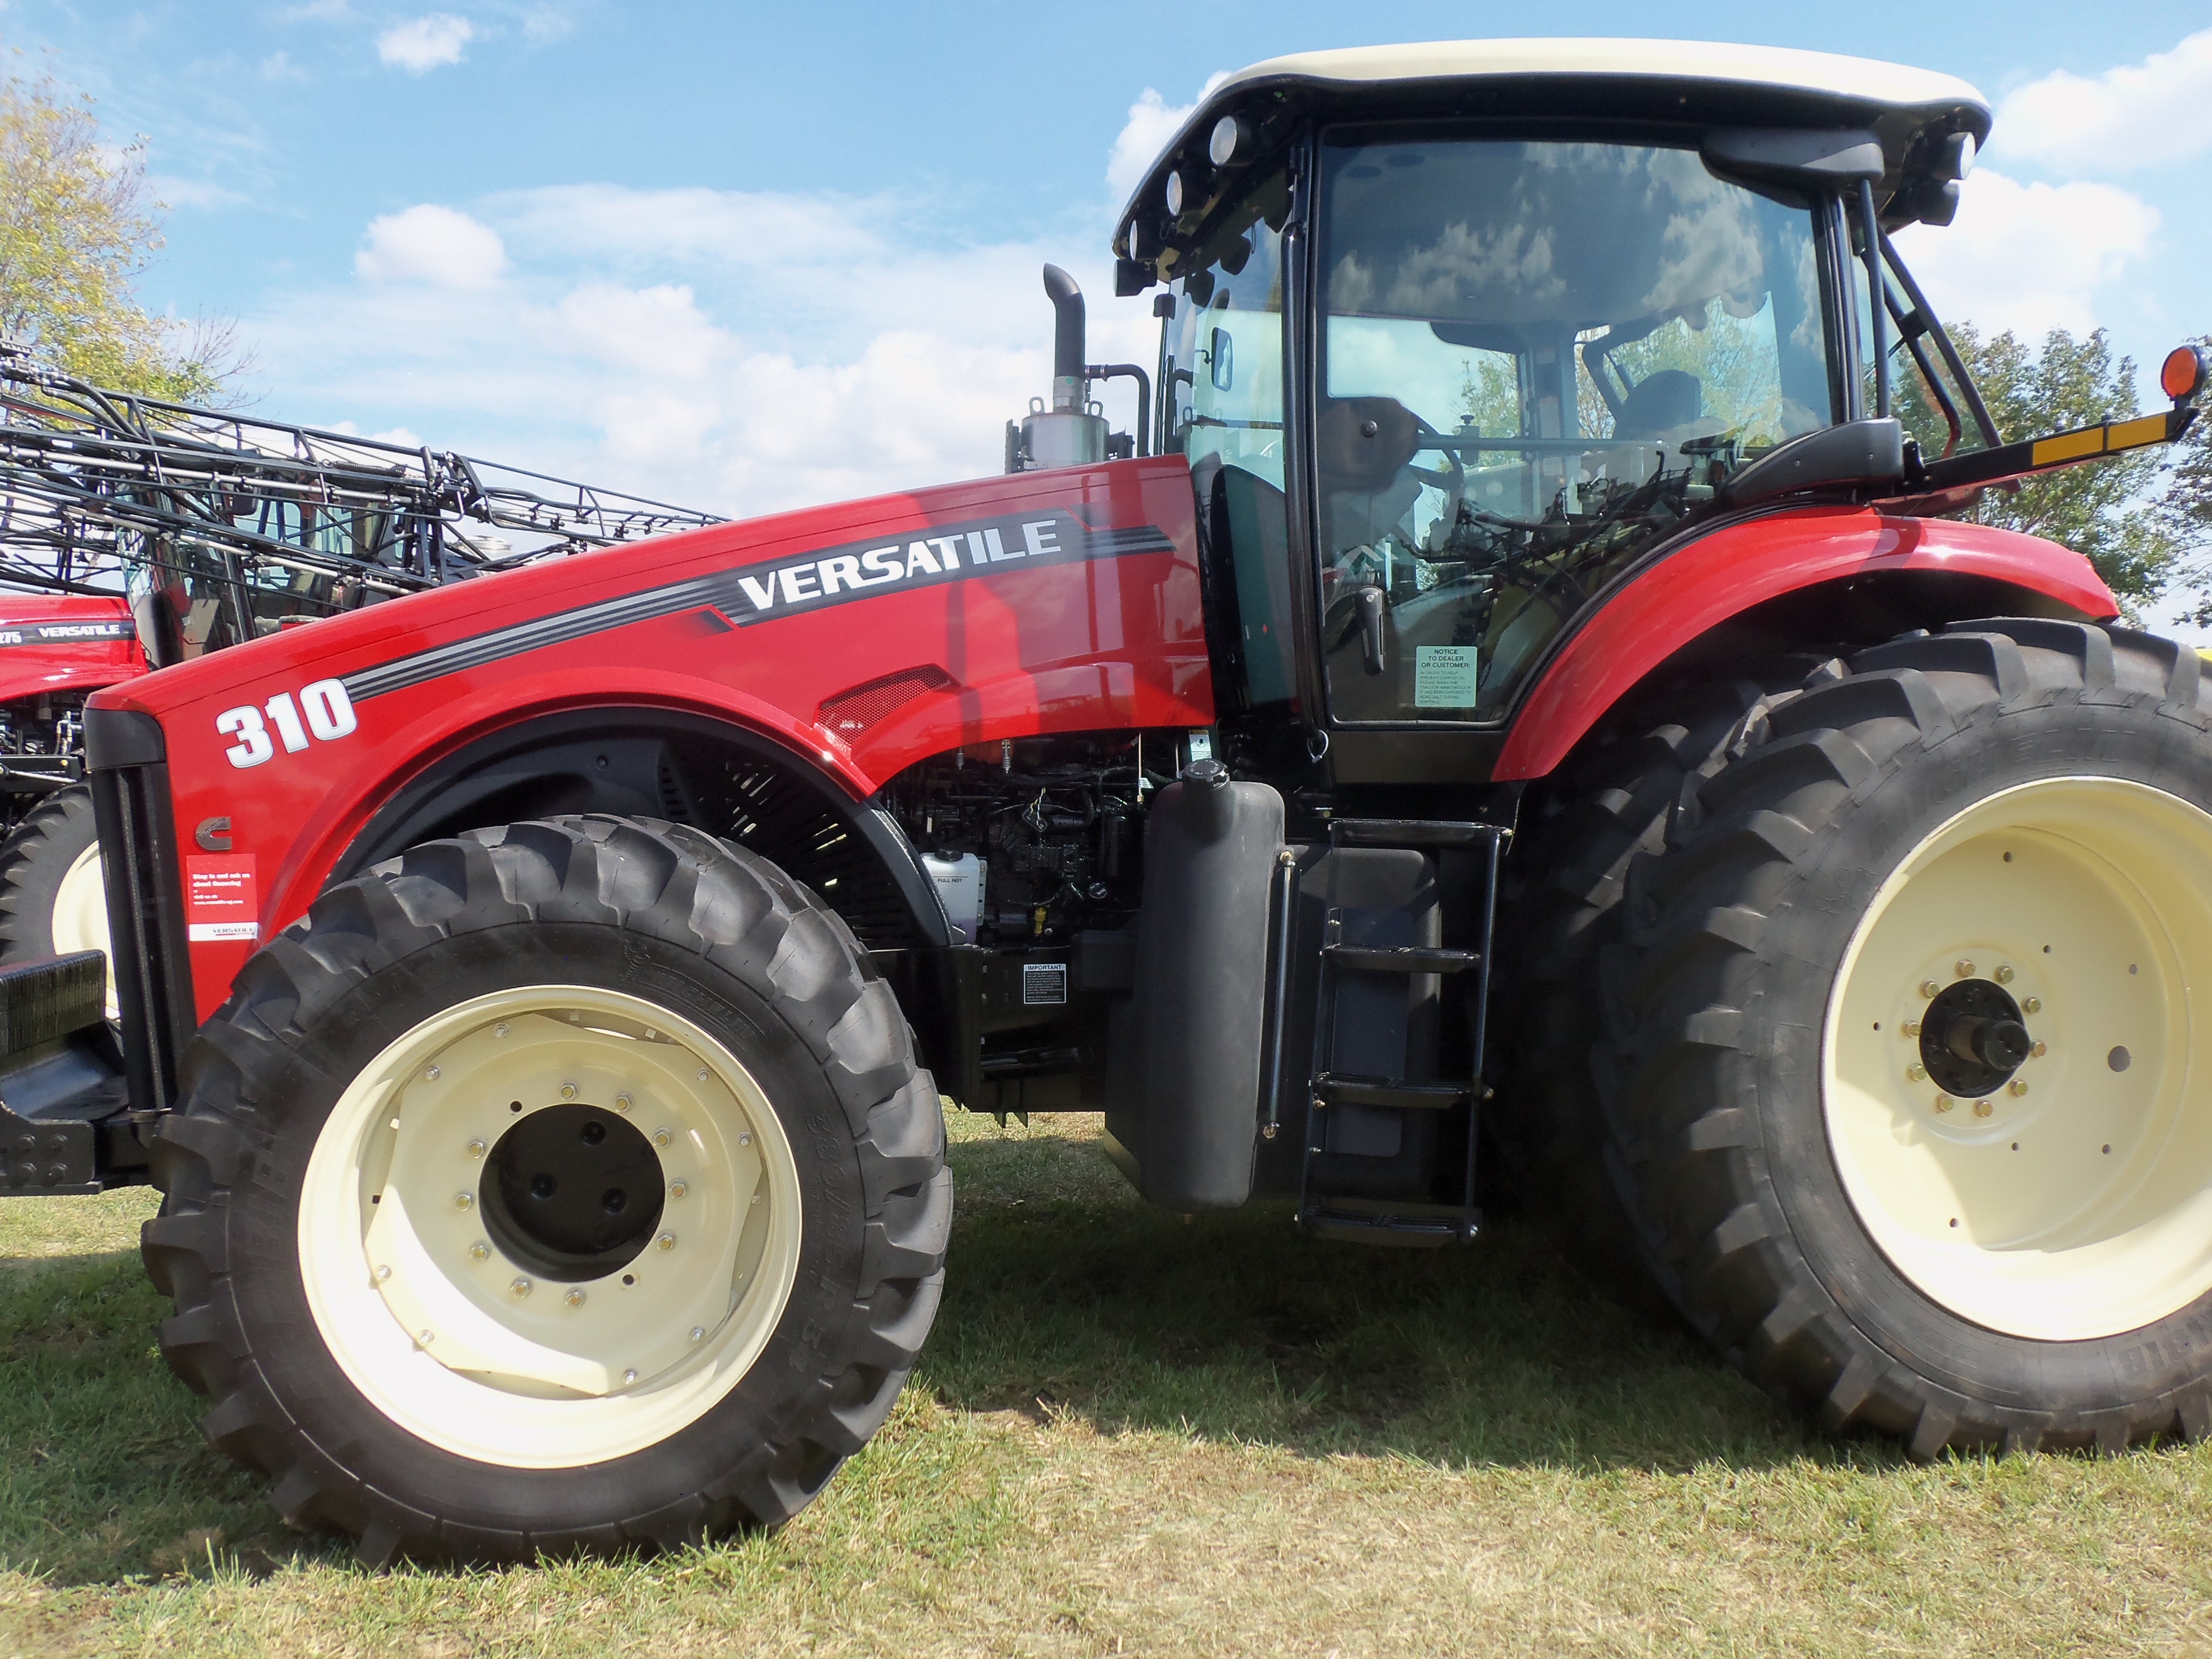 Versatile 310 row crop tractor | Versatile tractors & equipment | Pin ...